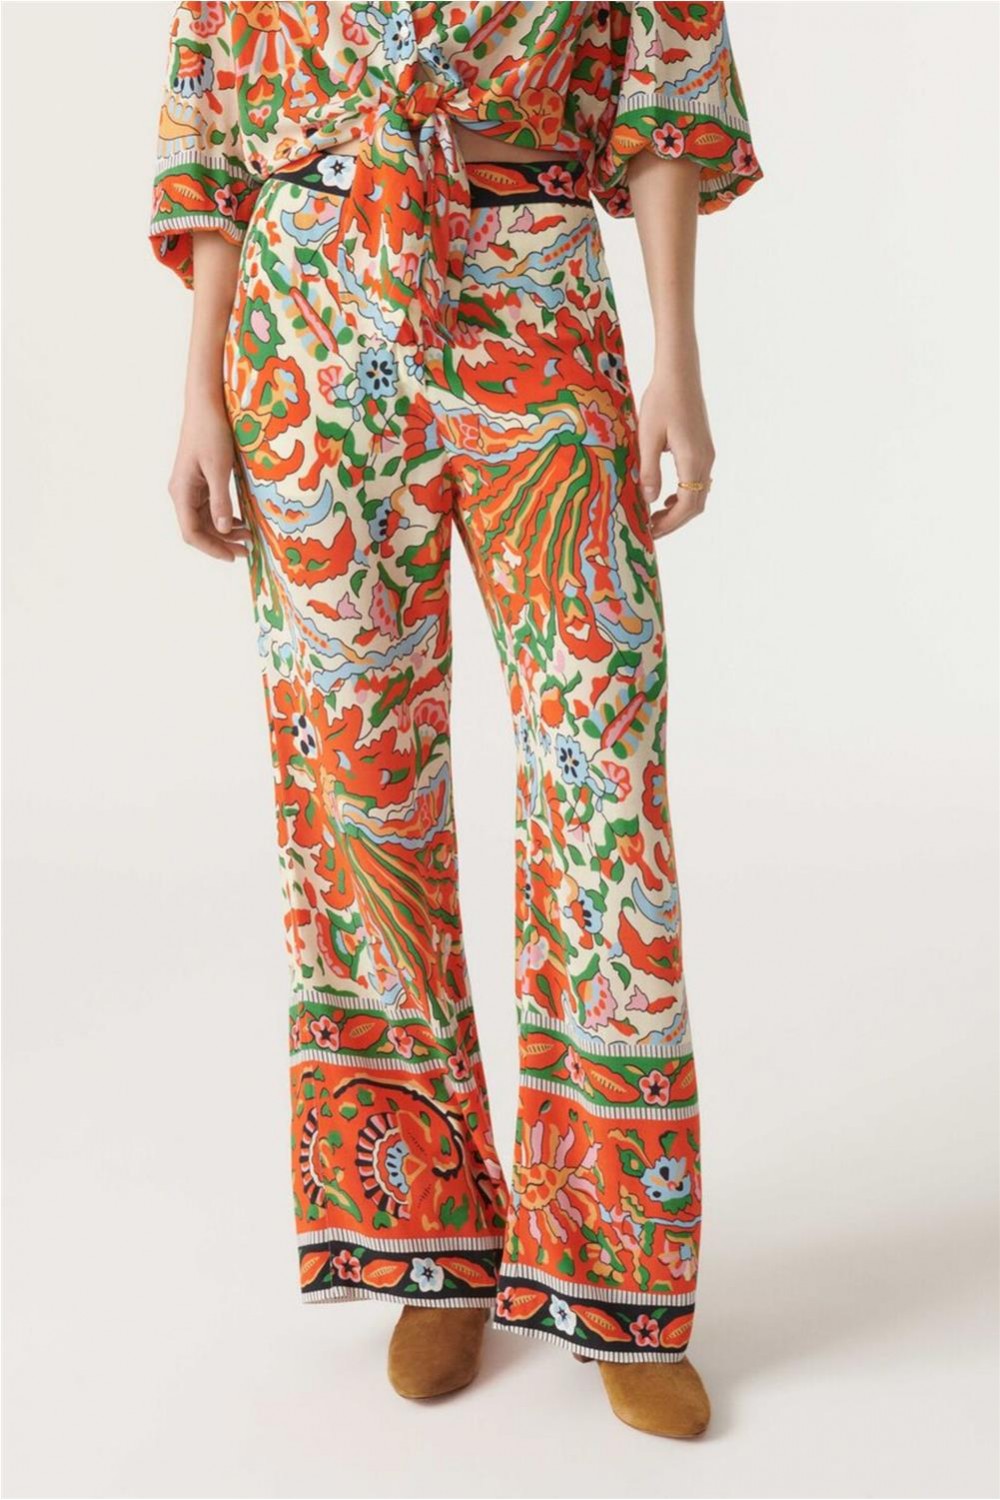 Pantalon fluido estampado floral - Stártara Shop Tienda online